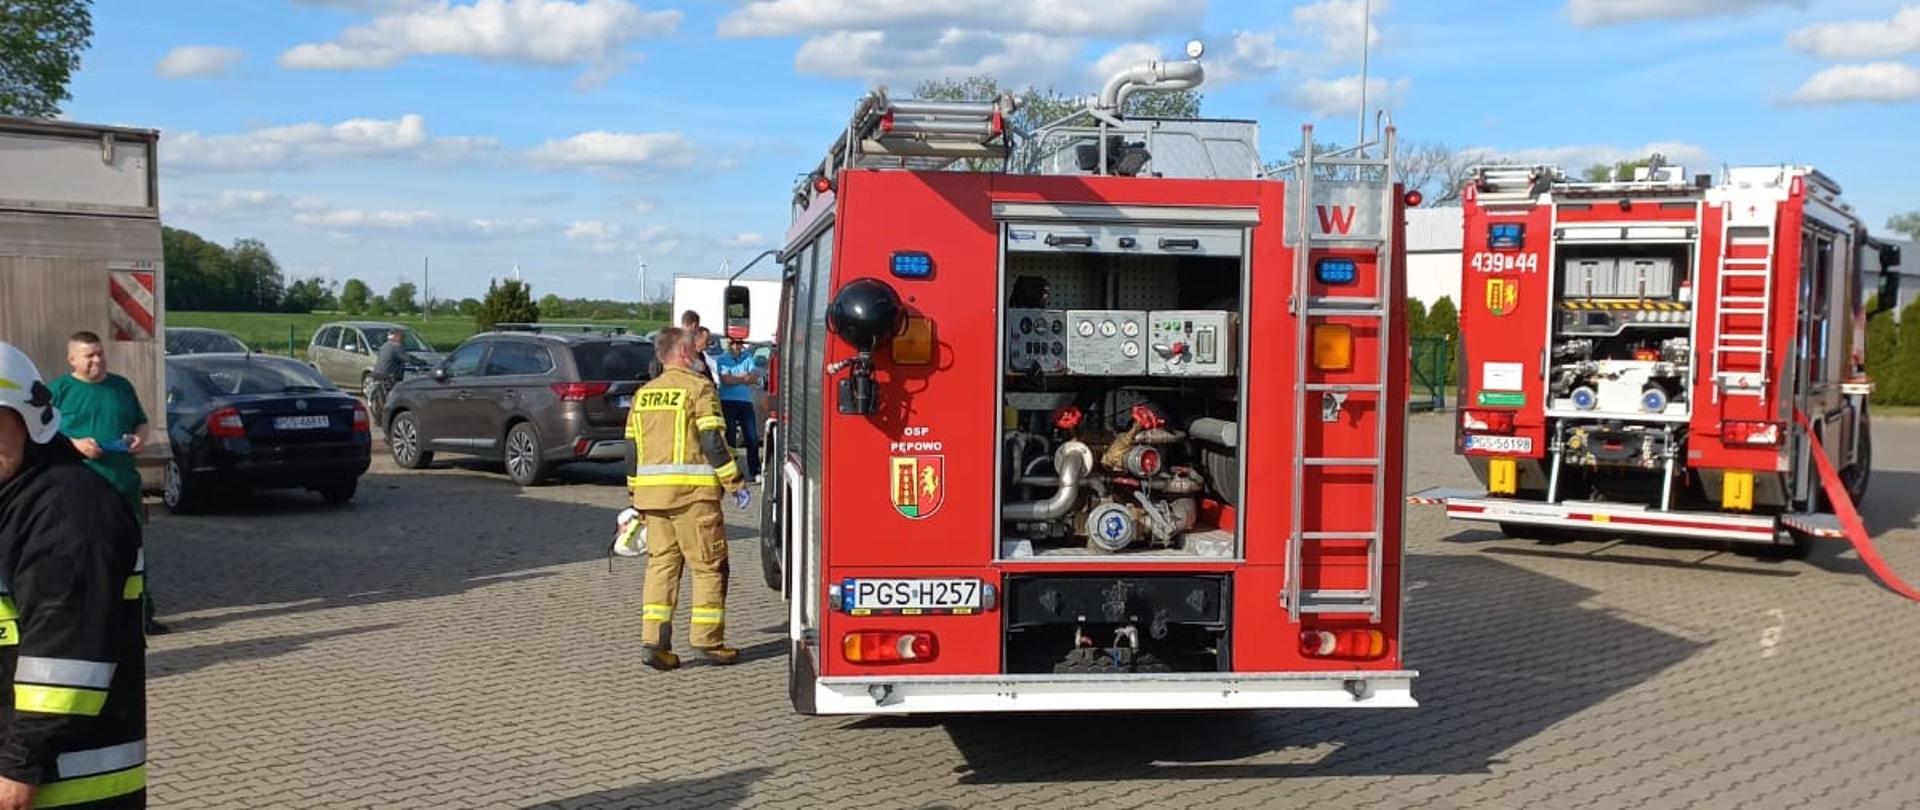 Zdjęcie przedstawia pojazdy pożarnicze stojące na placu firmy. 